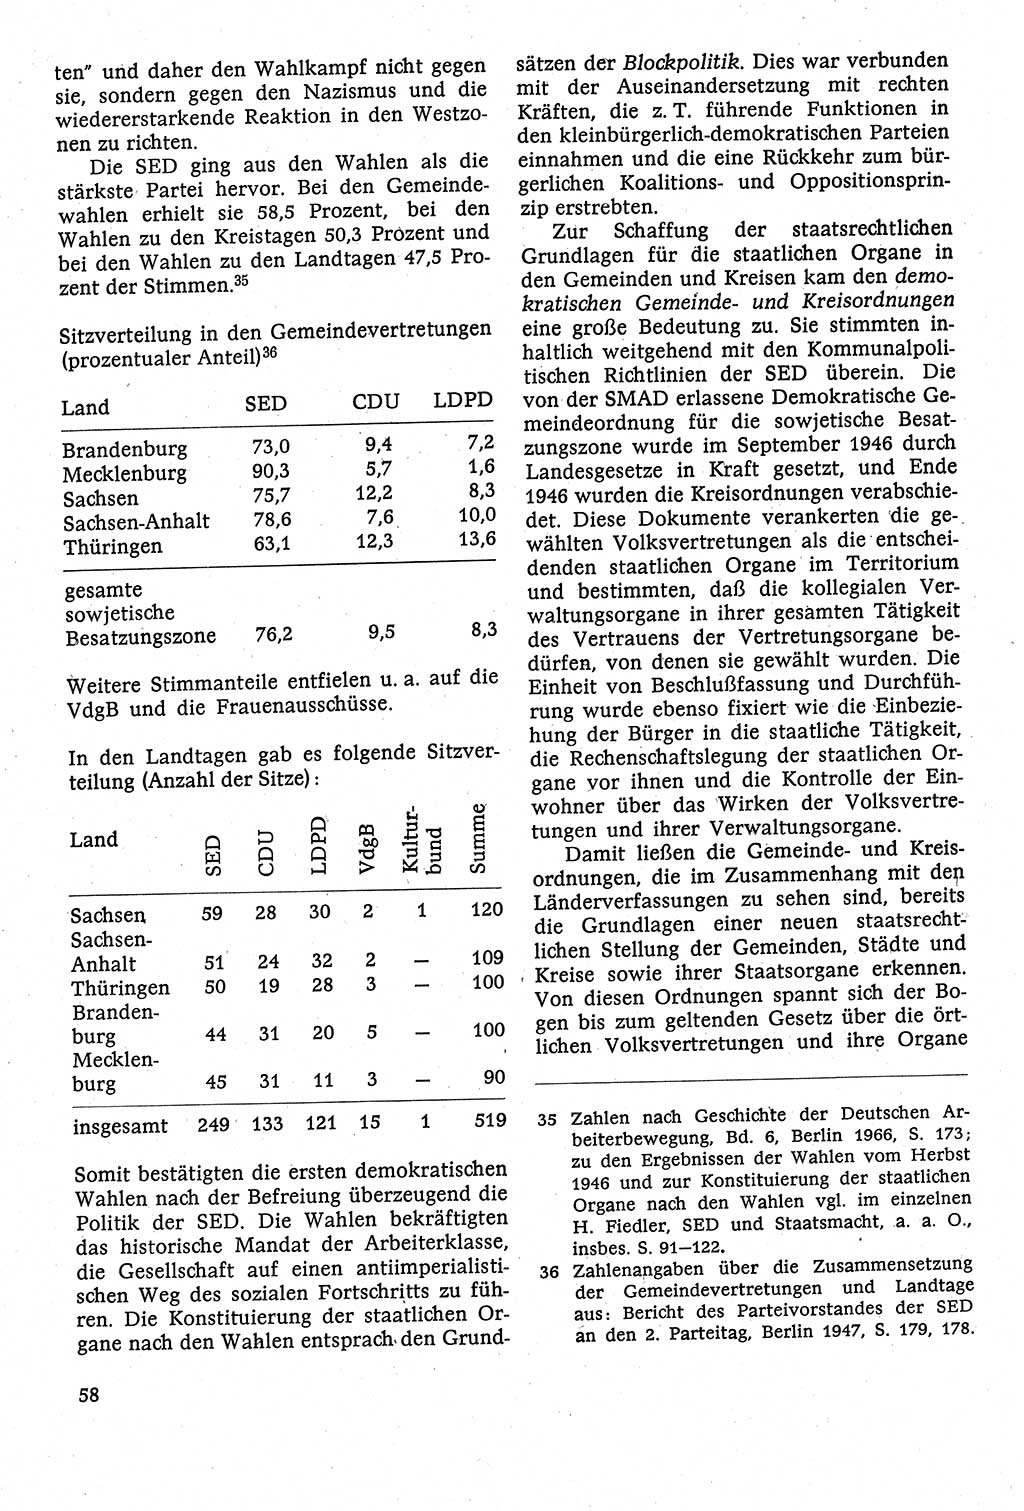 Staatsrecht der DDR [Deutsche Demokratische Republik (DDR)], Lehrbuch 1984, Seite 58 (St.-R. DDR Lb. 1984, S. 58)